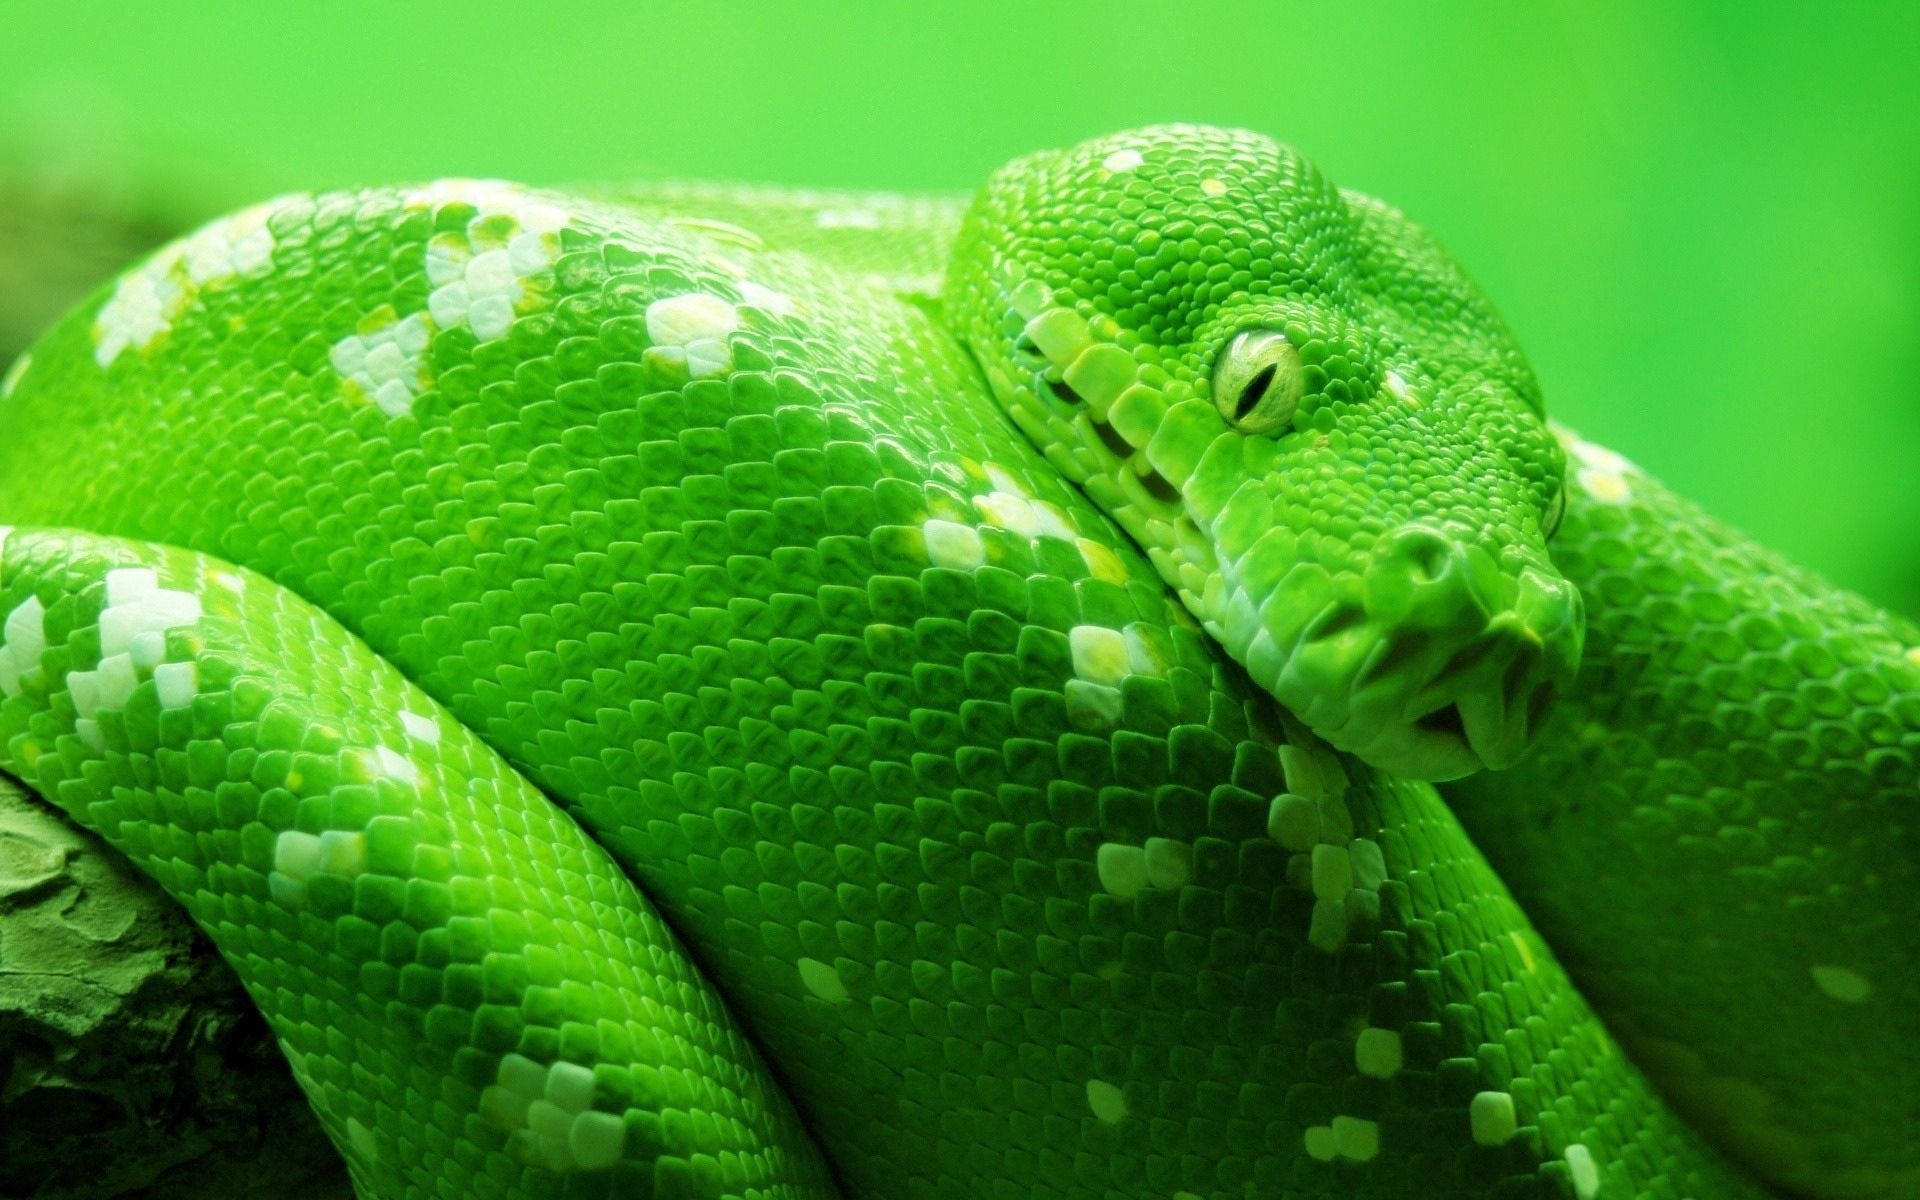 Green White Spotted Snake Wallpaper